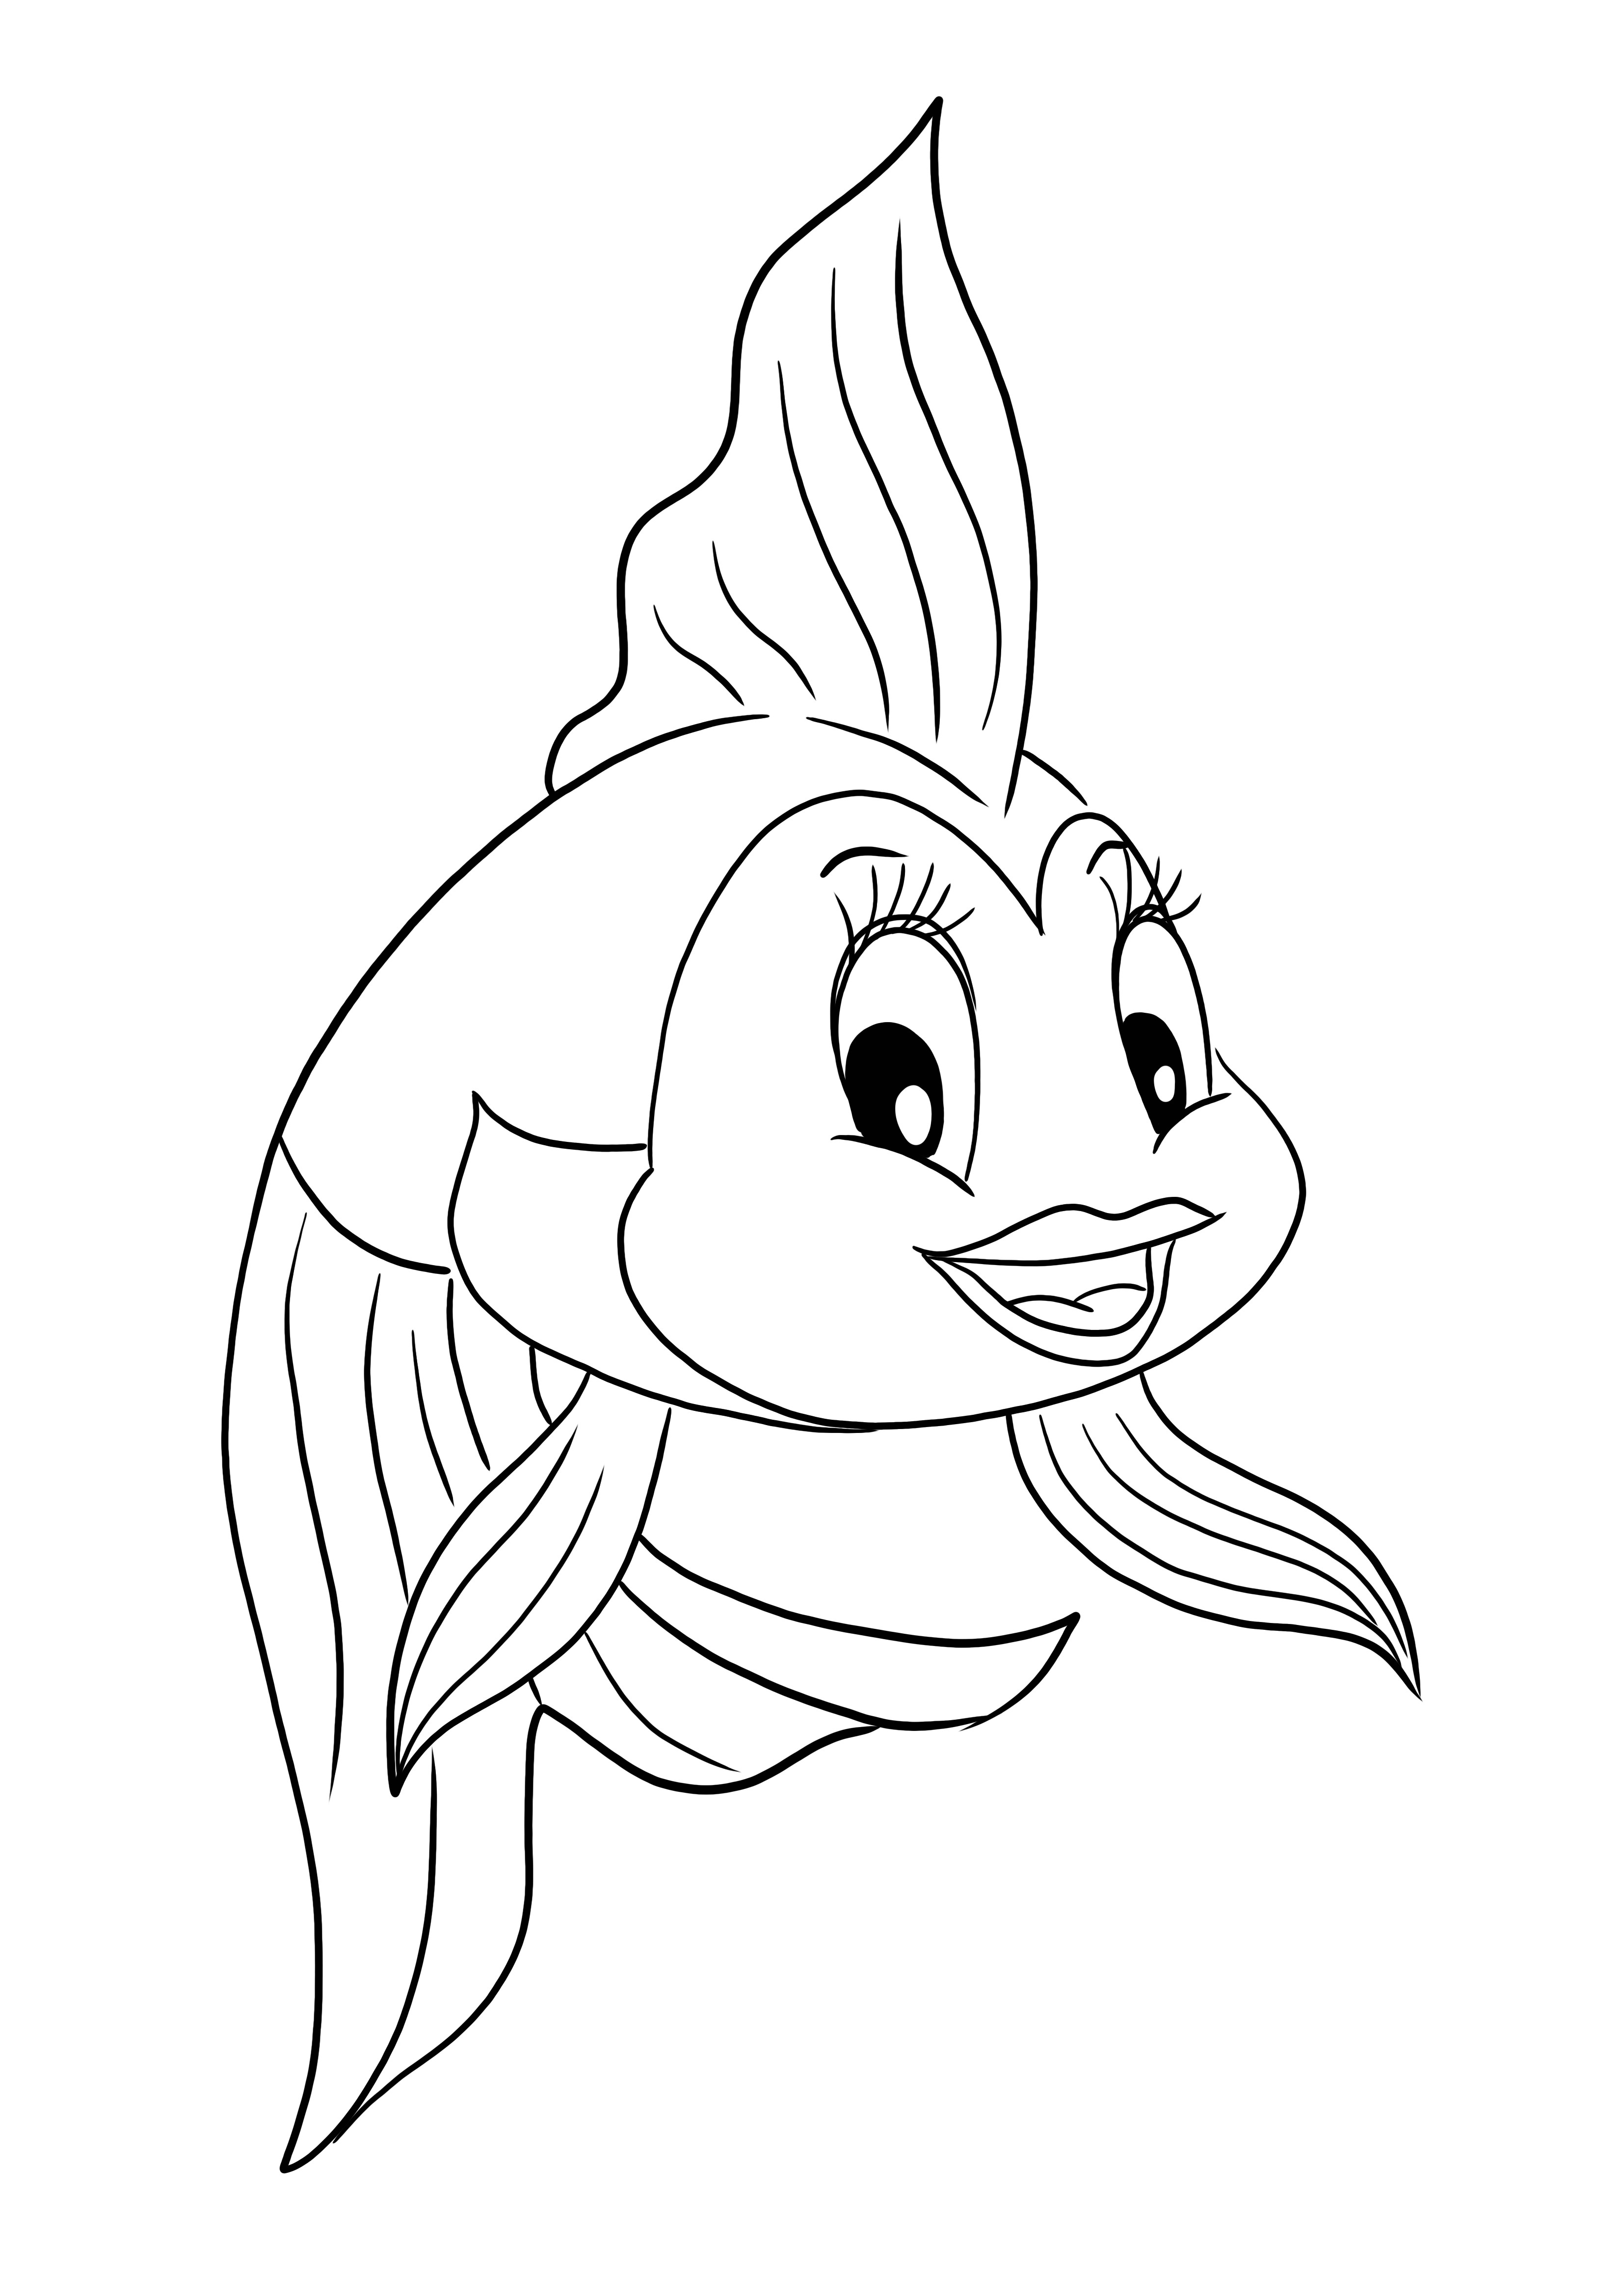 子供向け漫画「ピノキオ」に登場する魚のクレオの無料のぬり絵と印刷ページ